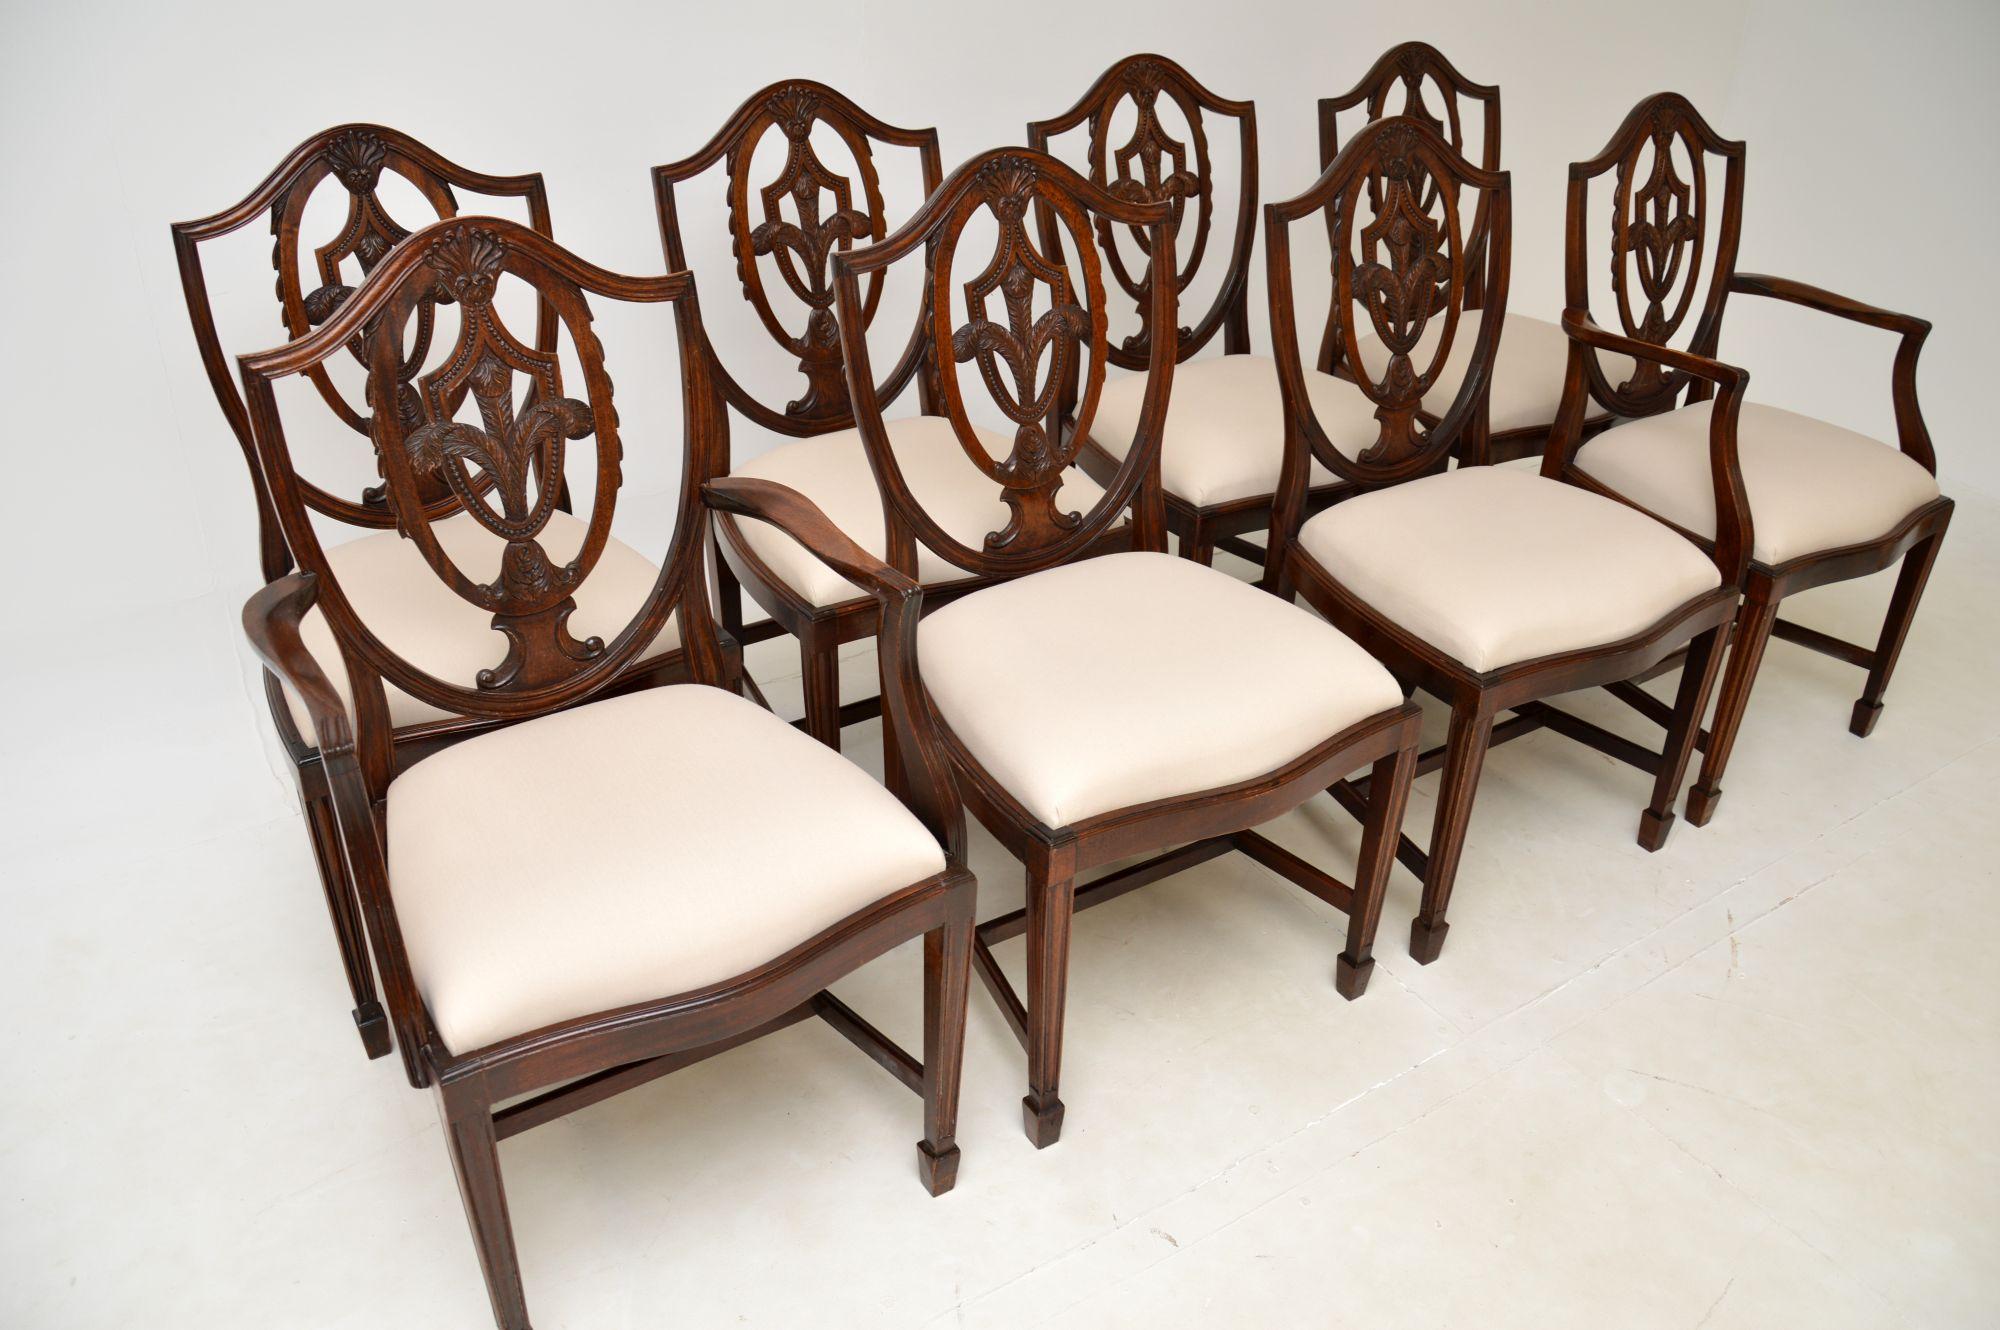 Ein schöner Satz von acht antiken Schildrückenstühlen im Sheraton-Stil. Sie wurden in England hergestellt und stammen etwa aus den 1930er Jahren.

Die Qualität ist hervorragend, sie haben wunderschön geschnitzte durchbrochene Rückenlehnen mit